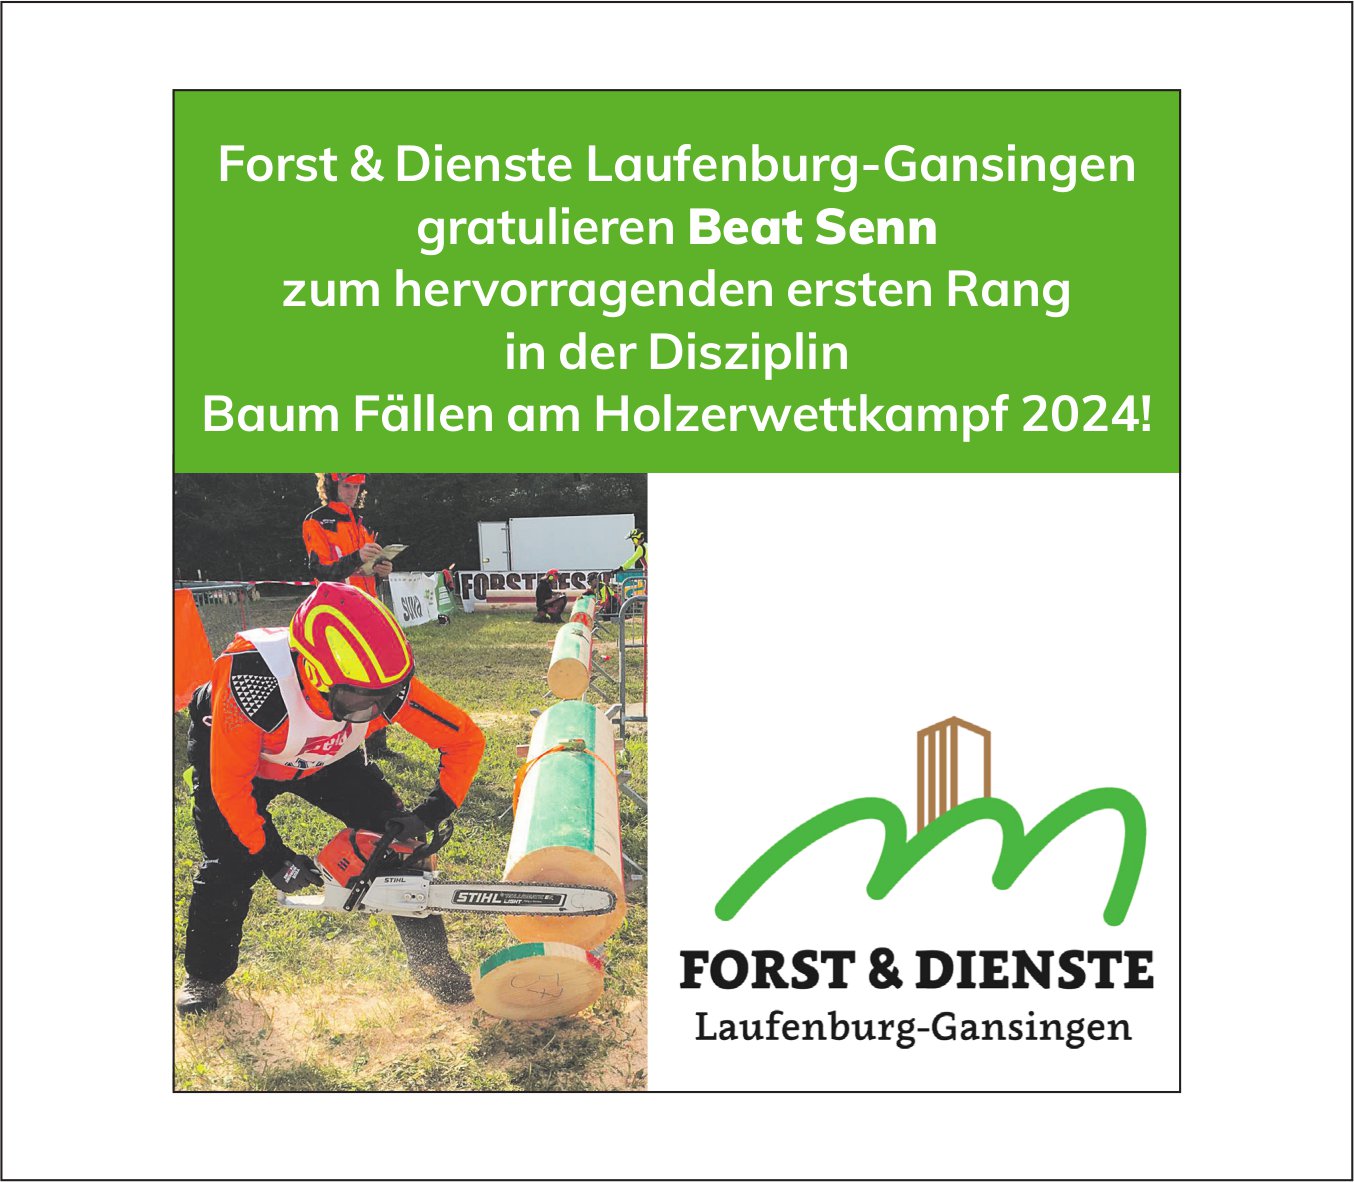 Forst & Dienste, gratulieren Beat Senn zum ersten Rang am Holzerwettkampf